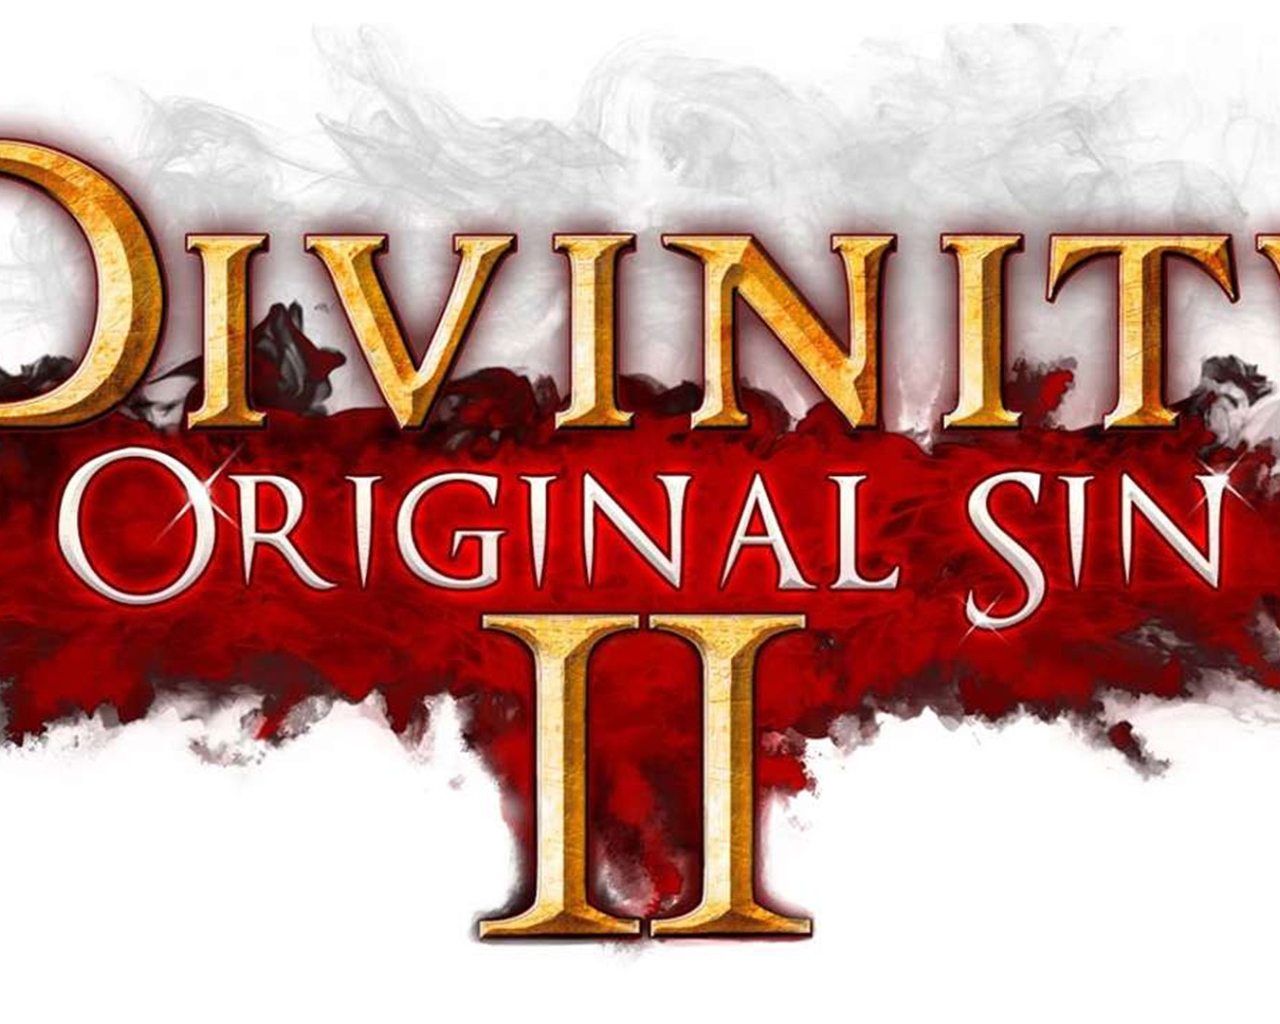 Постер с названием игры Divinity Original Sin II 